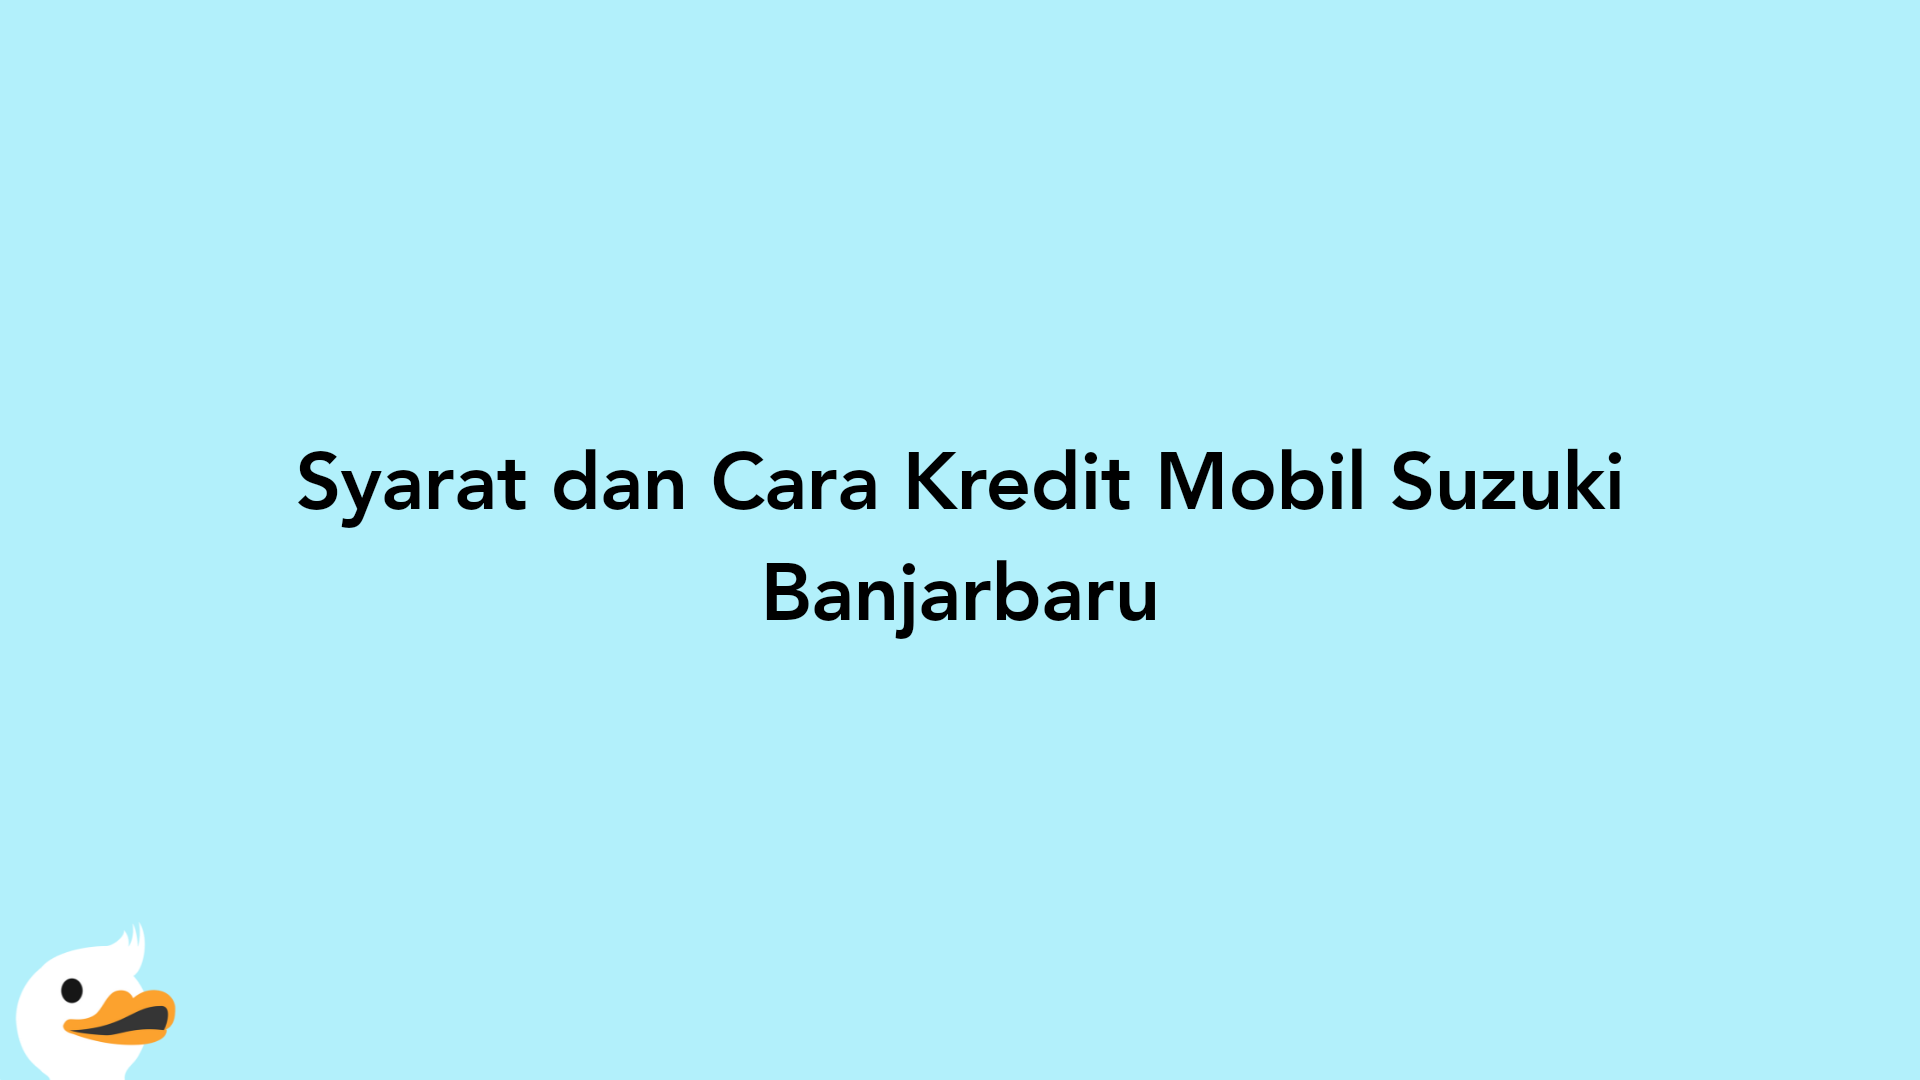 Syarat dan Cara Kredit Mobil Suzuki Banjarbaru